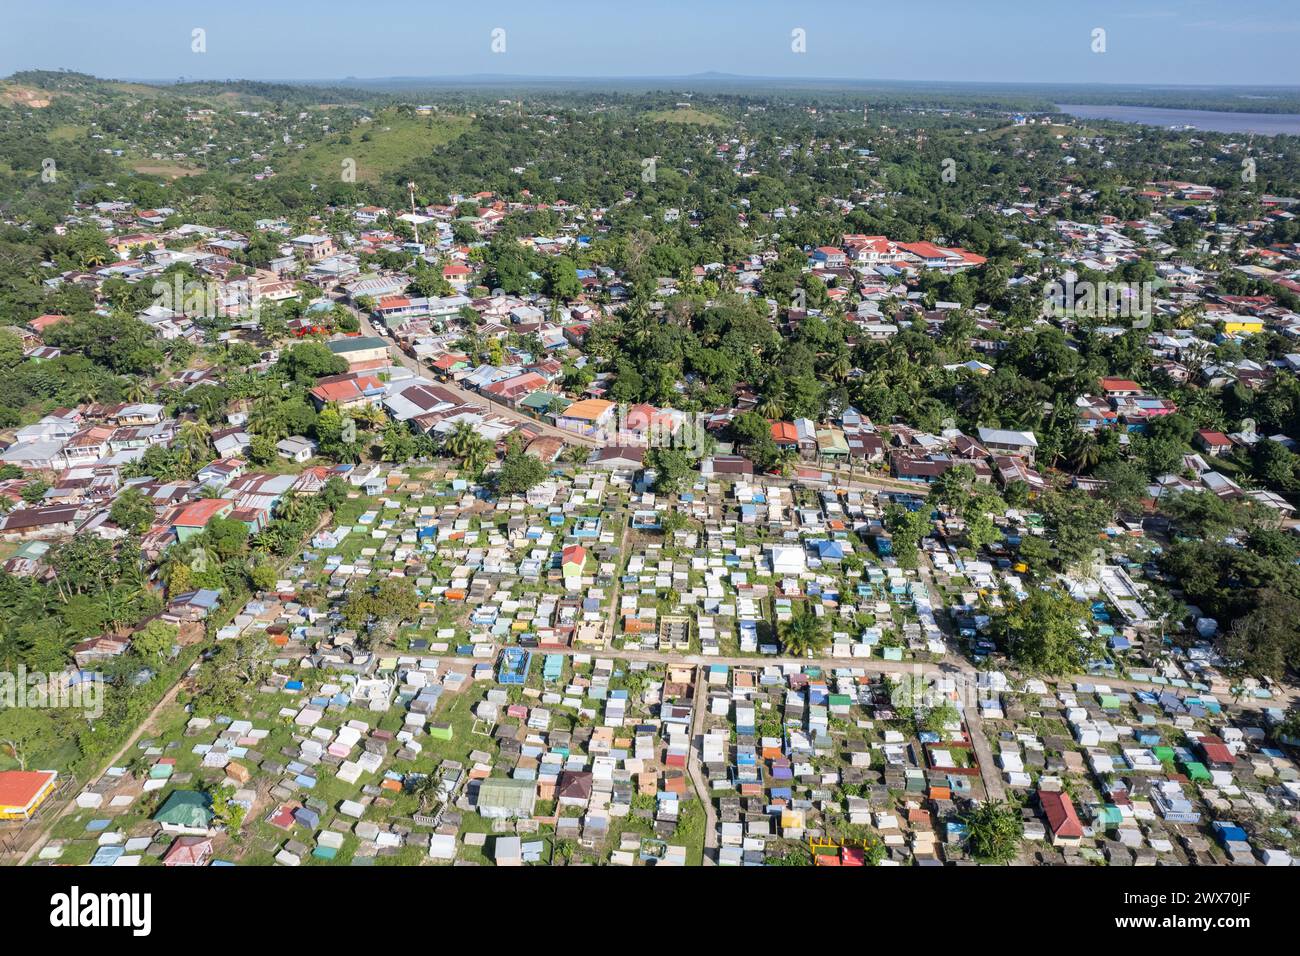 Vista aerea del Cimitero nella città costiera caraibica con droni sulla luce solare Foto Stock